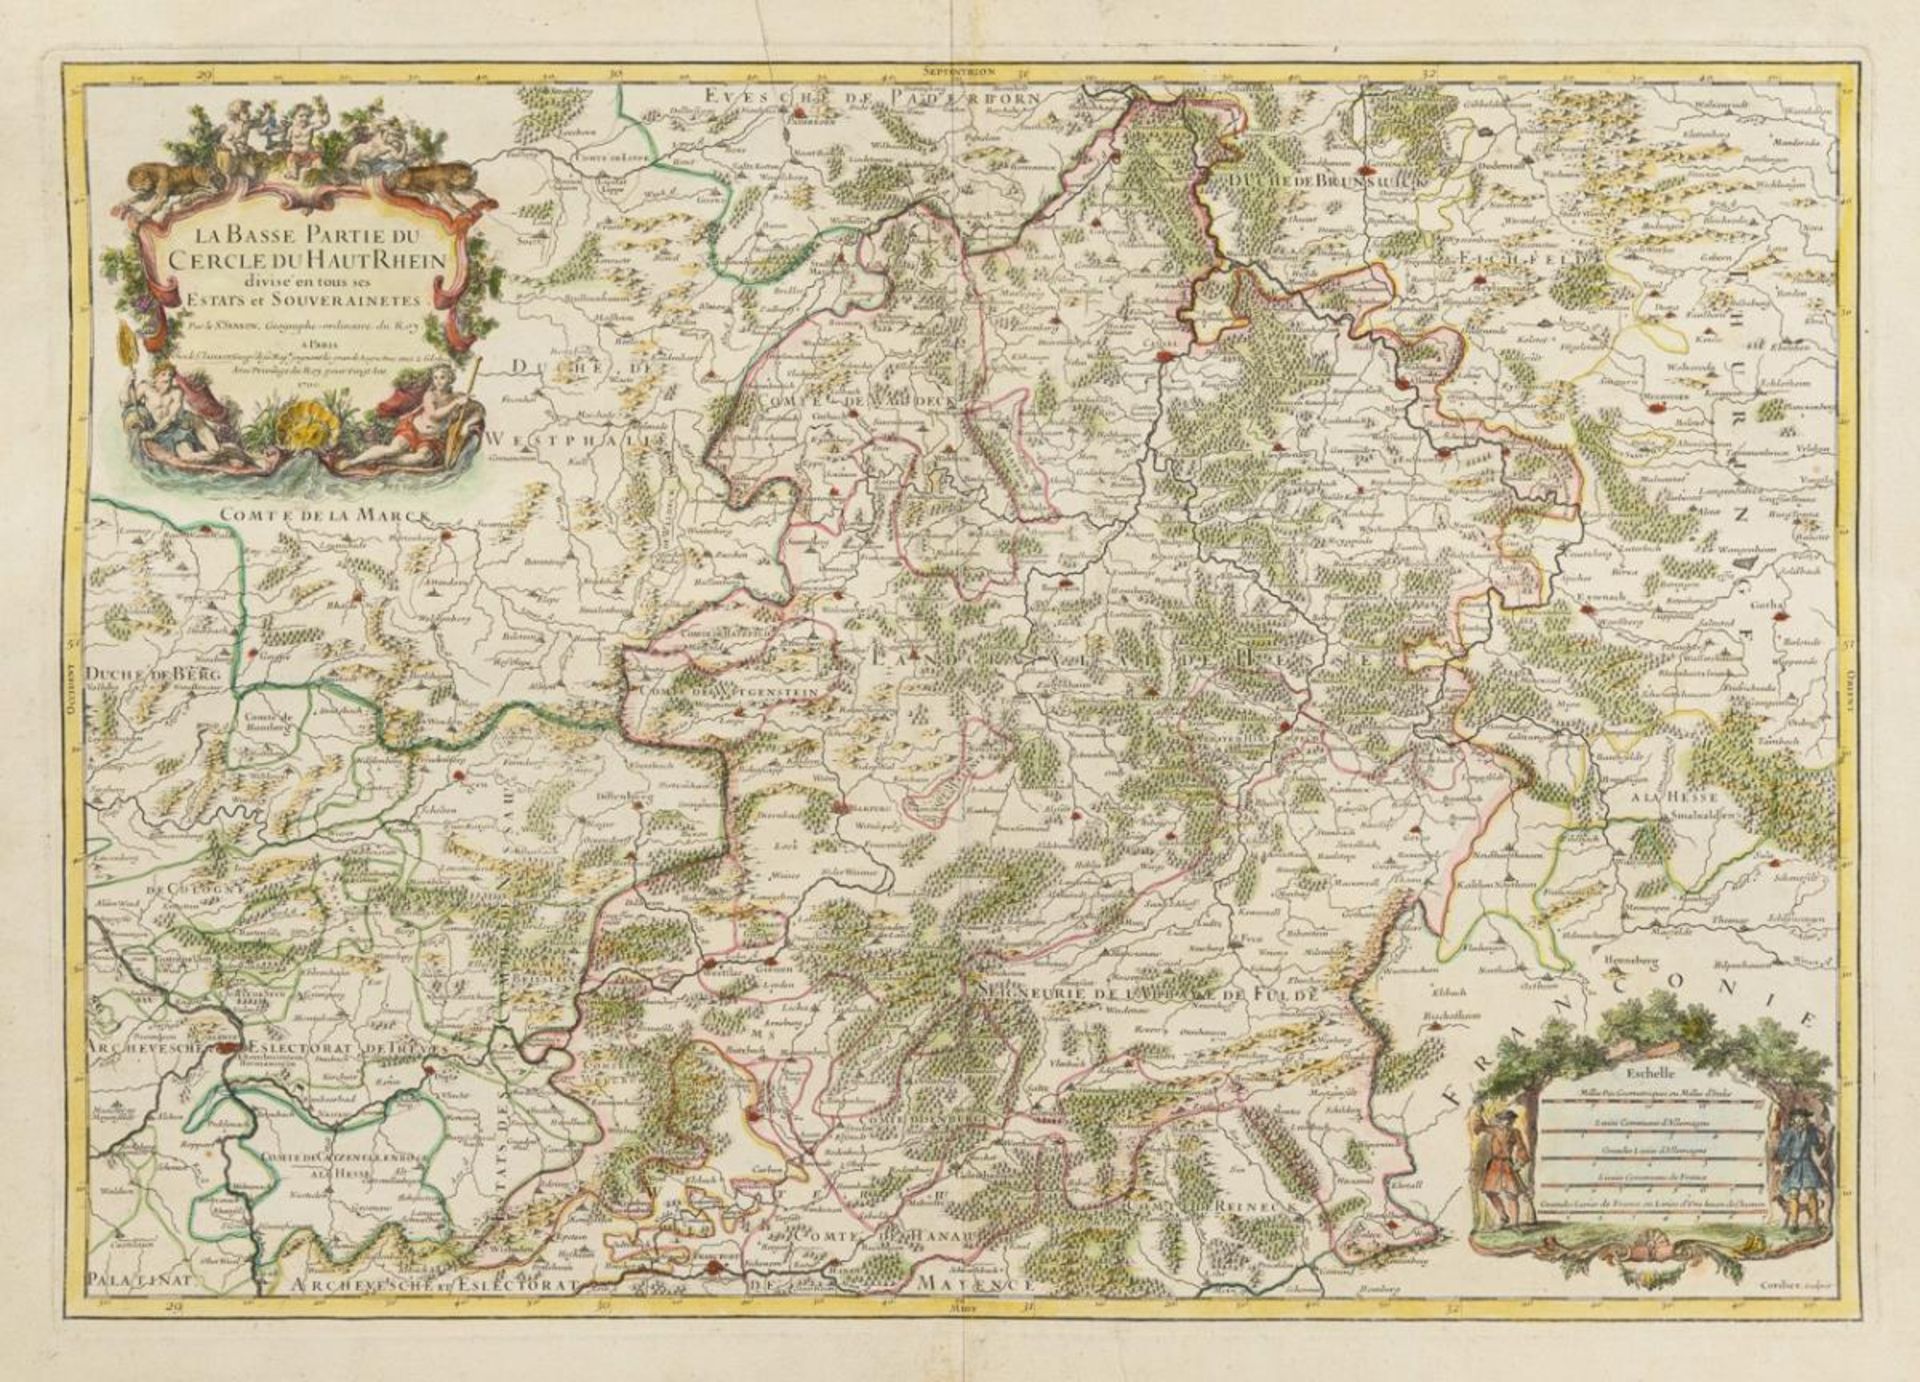 SANSON, Nicholas (1600 Abbeville - 1667 Paris). Landkarte des deutsch-französischen Grenzgebietes.